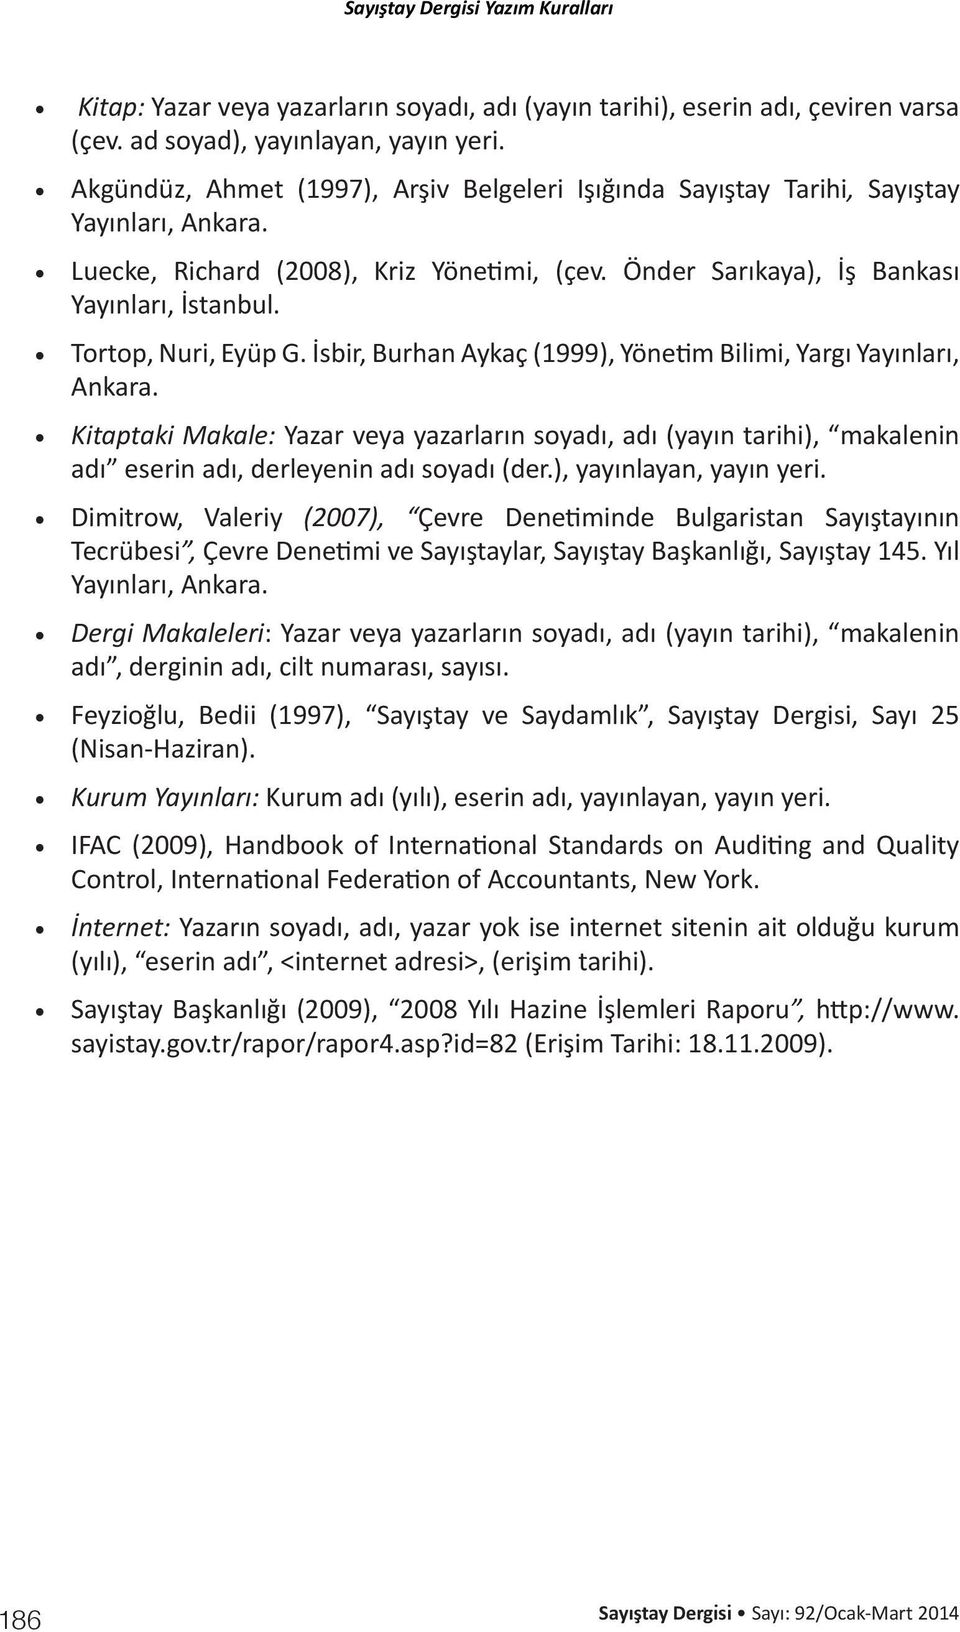 Tortop, Nuri, Eyüp G. İsbir, Burhan Aykaç (1999), Yönetim Bilimi, Yargı Yayınları, Ankara.